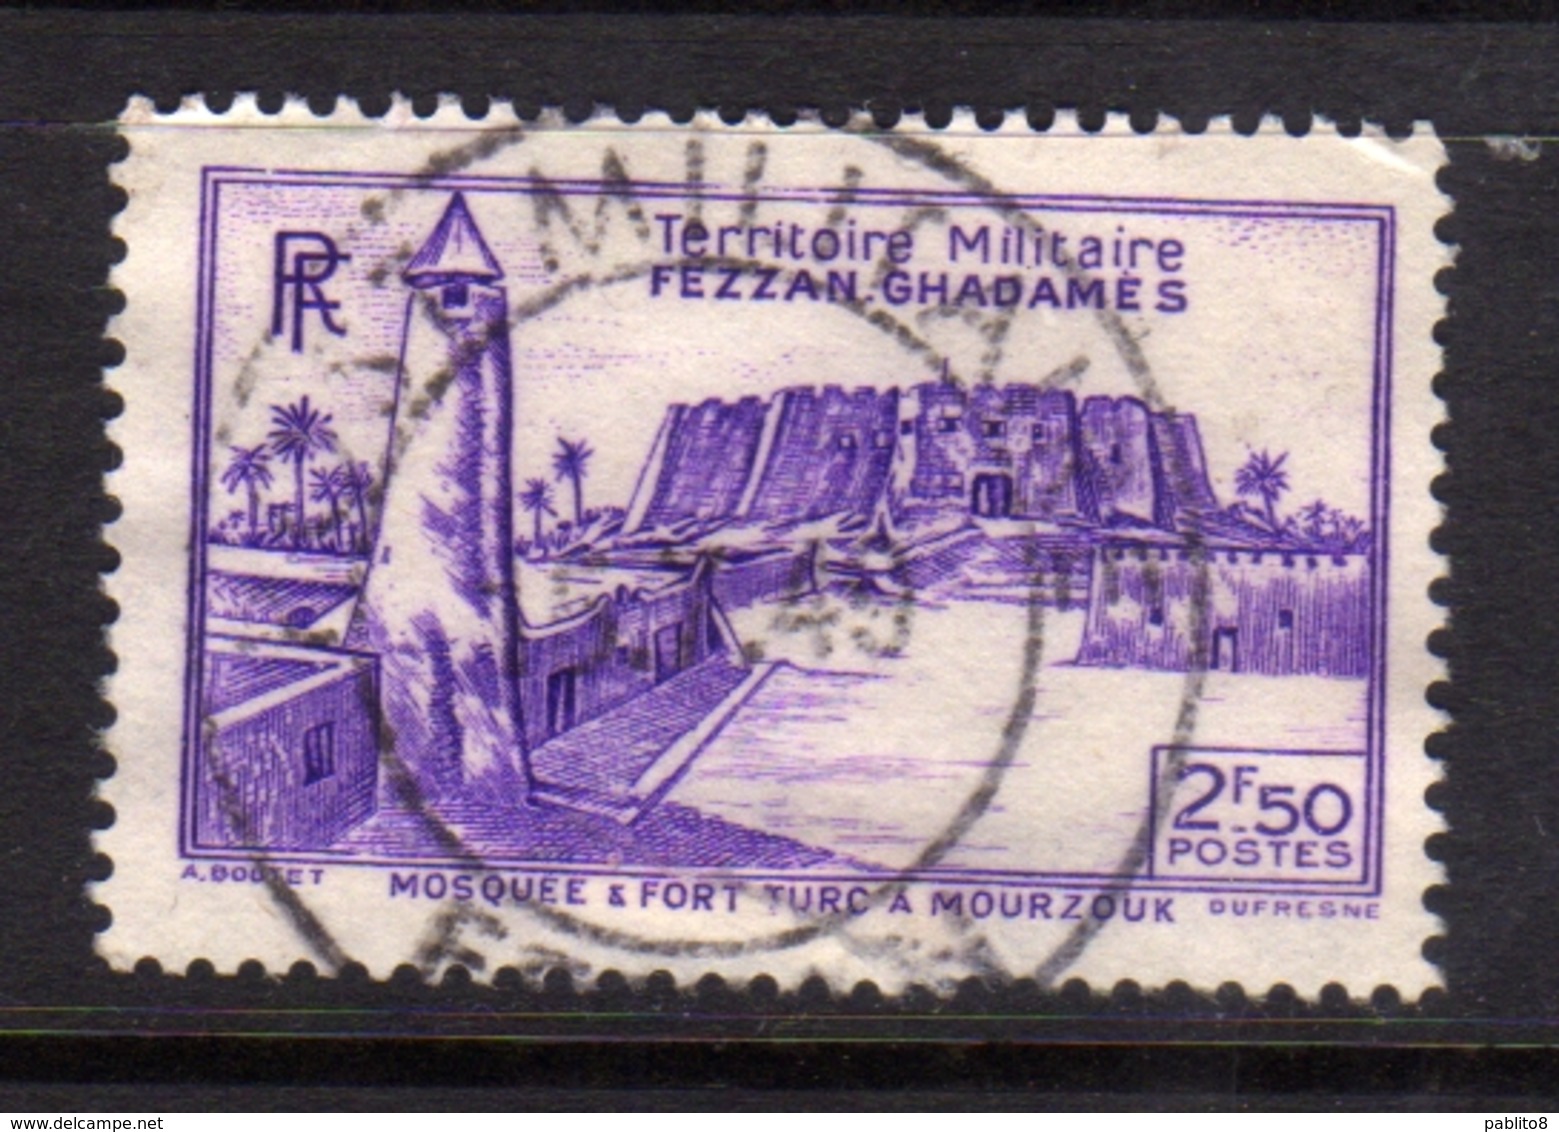 FEZZAN E GHADAMES 1946 TERRITORIO MILITARE MILITAIRE FORT DE MURZUK FORTE 2.50f USATO USED OBLITERE' - Unused Stamps